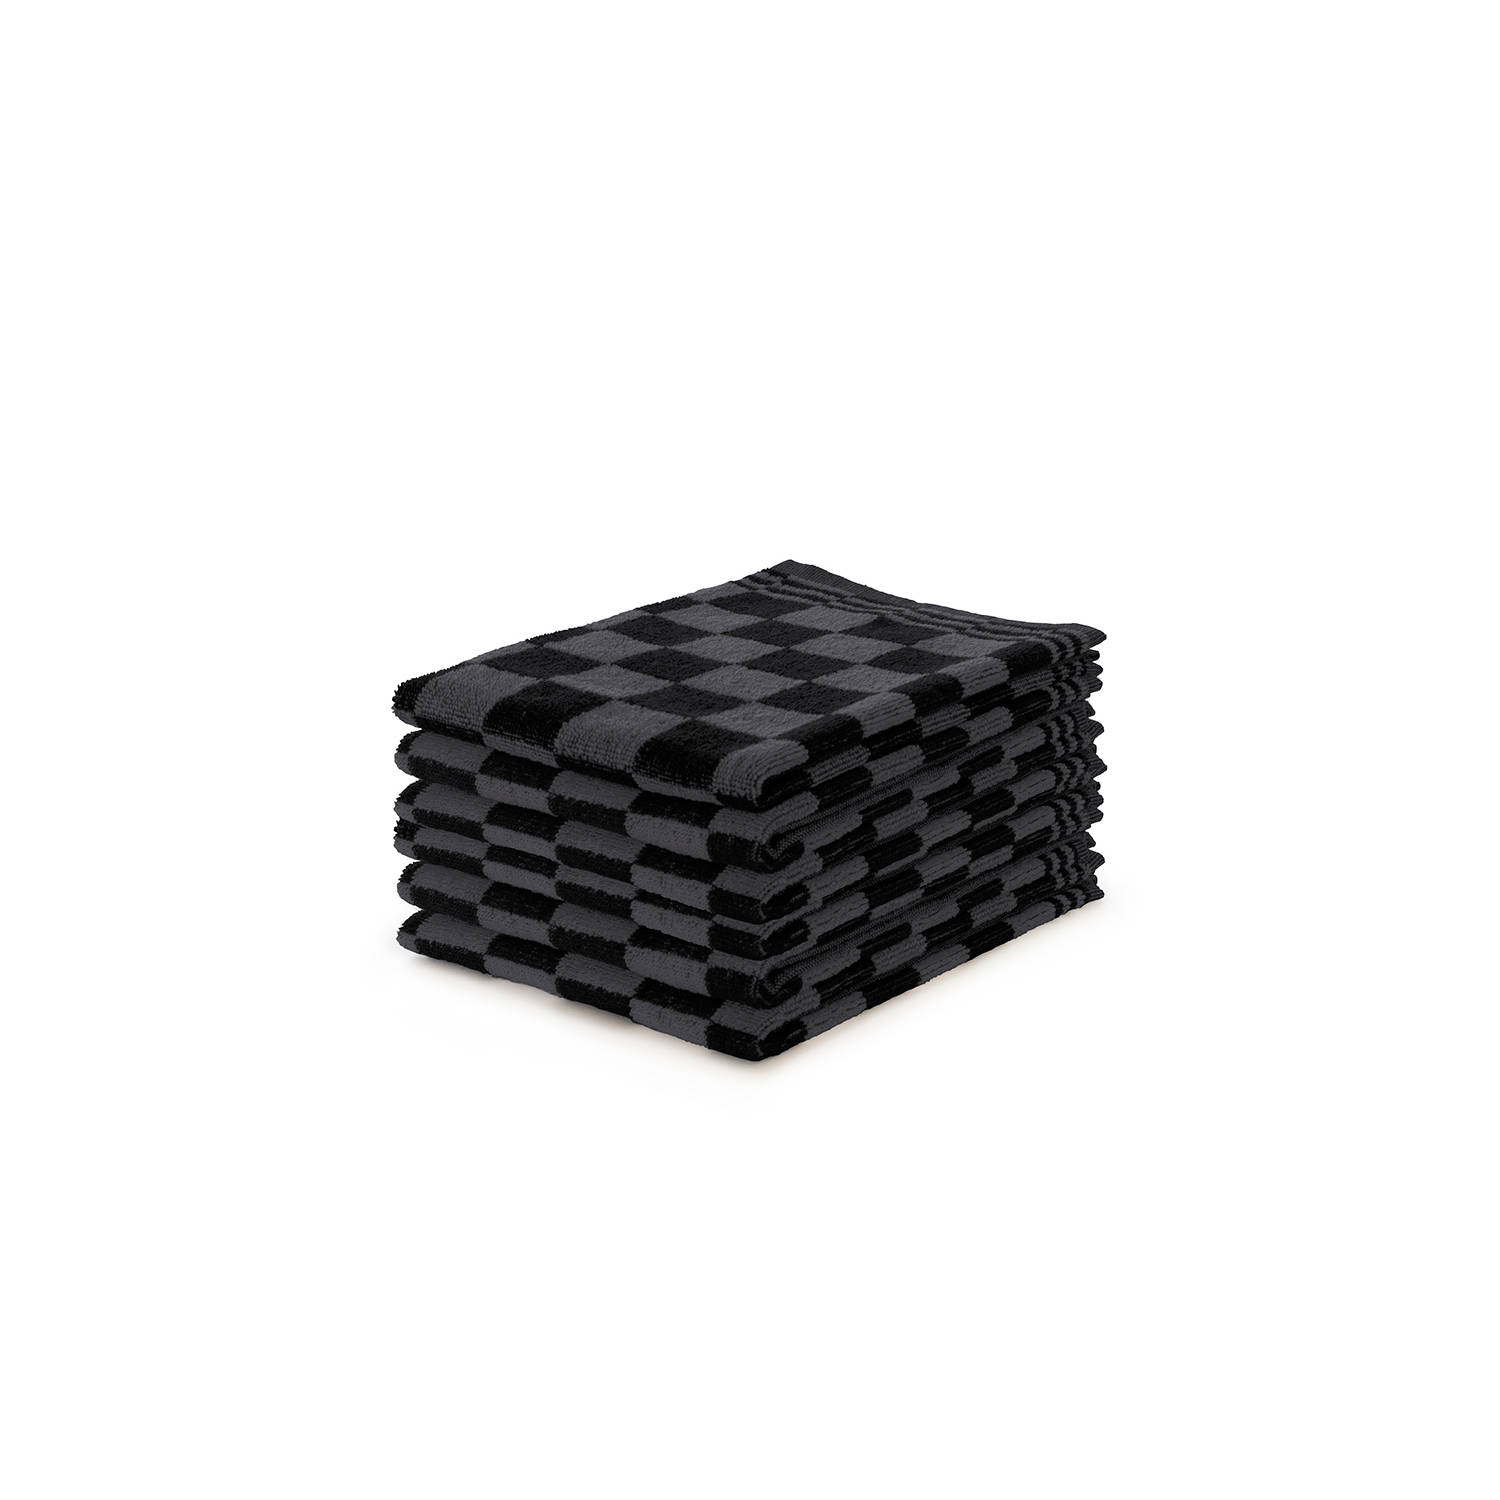 Ten Cate Keukendoeken Set Blok 50x50 zwart set van 6